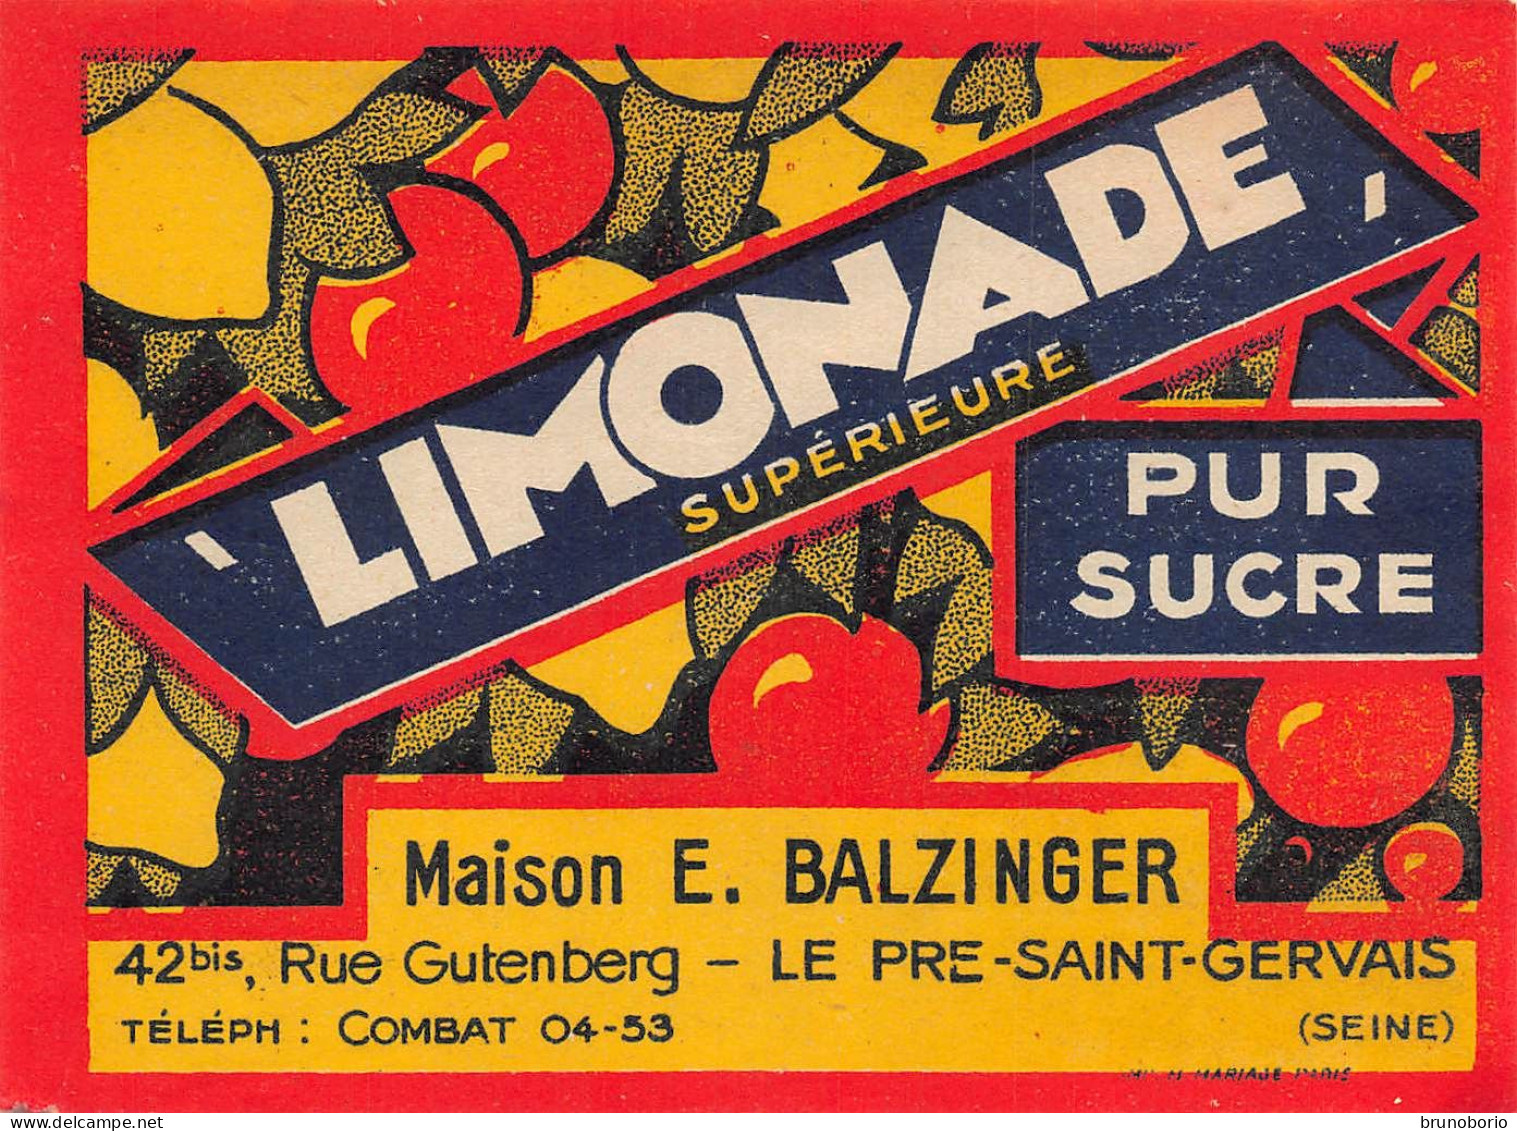 00147  "LIMONADE SUPERIEURE PUR SUCRE - MAISON E. BALZINGER - LE PRE-SAINT.VVERVAIS /SEINE)"  ETICH. ORIG - Fruits & Vegetables